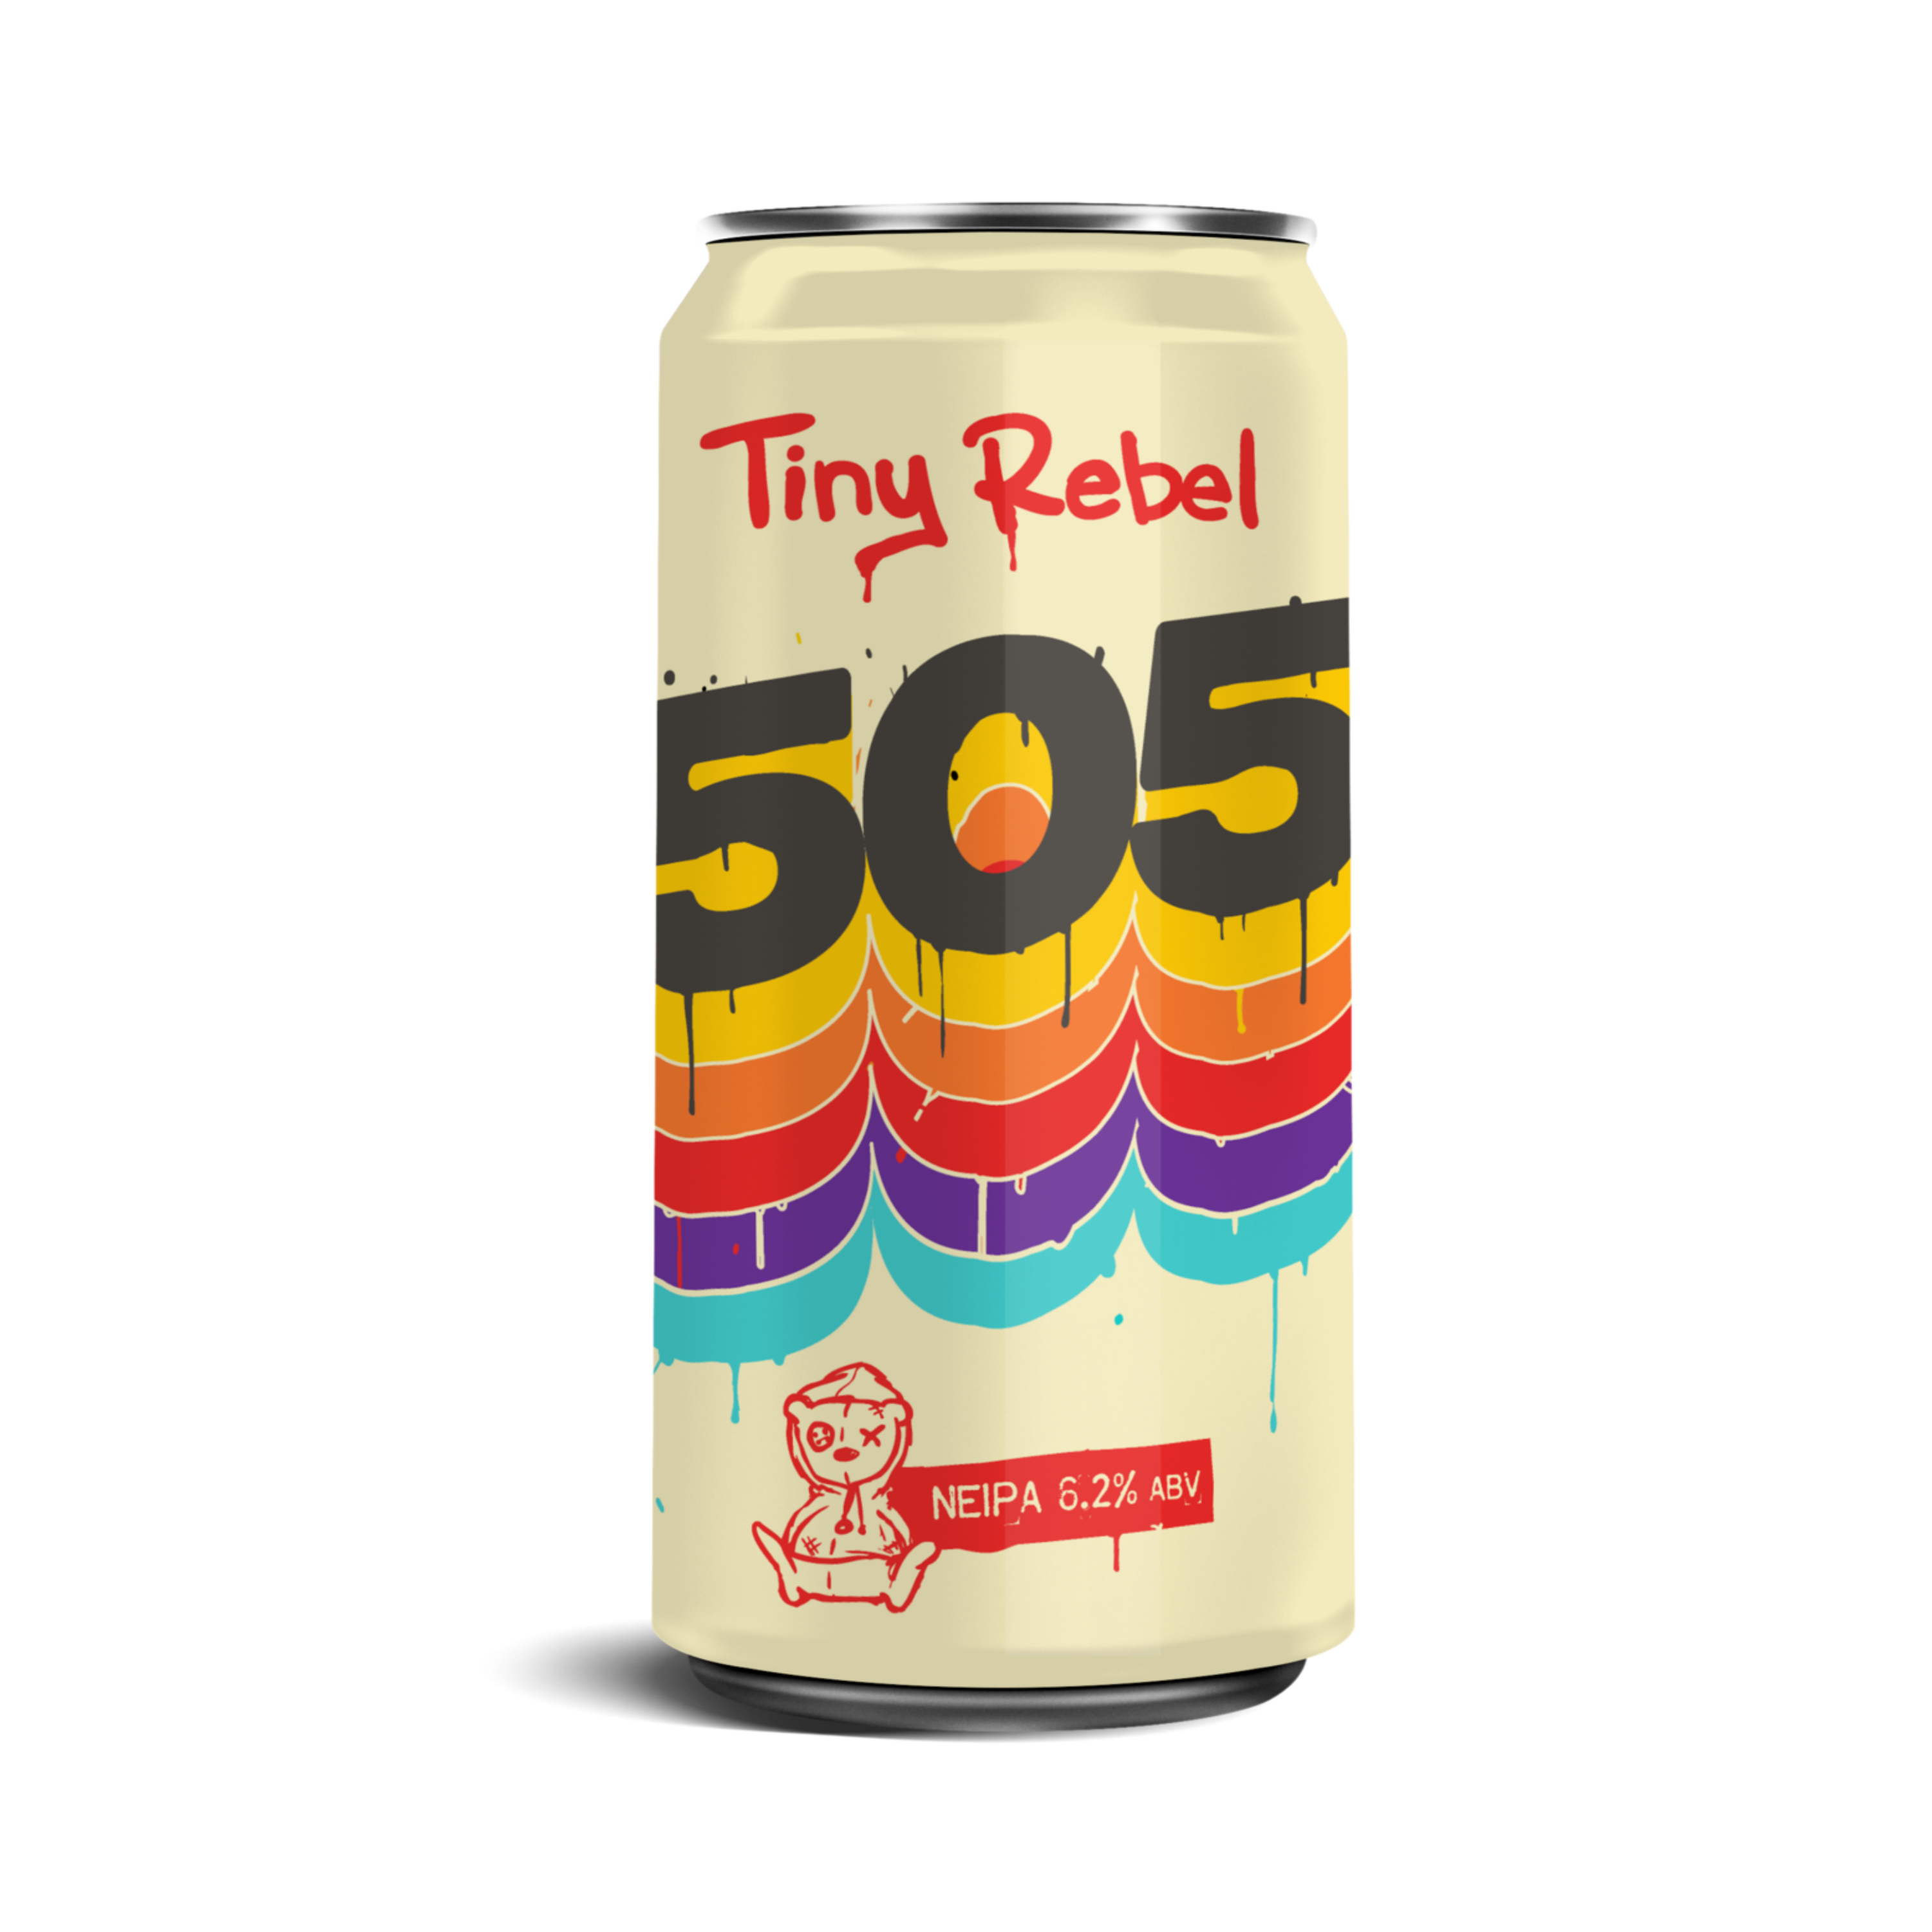 Tiny Rebel 505 6.2%